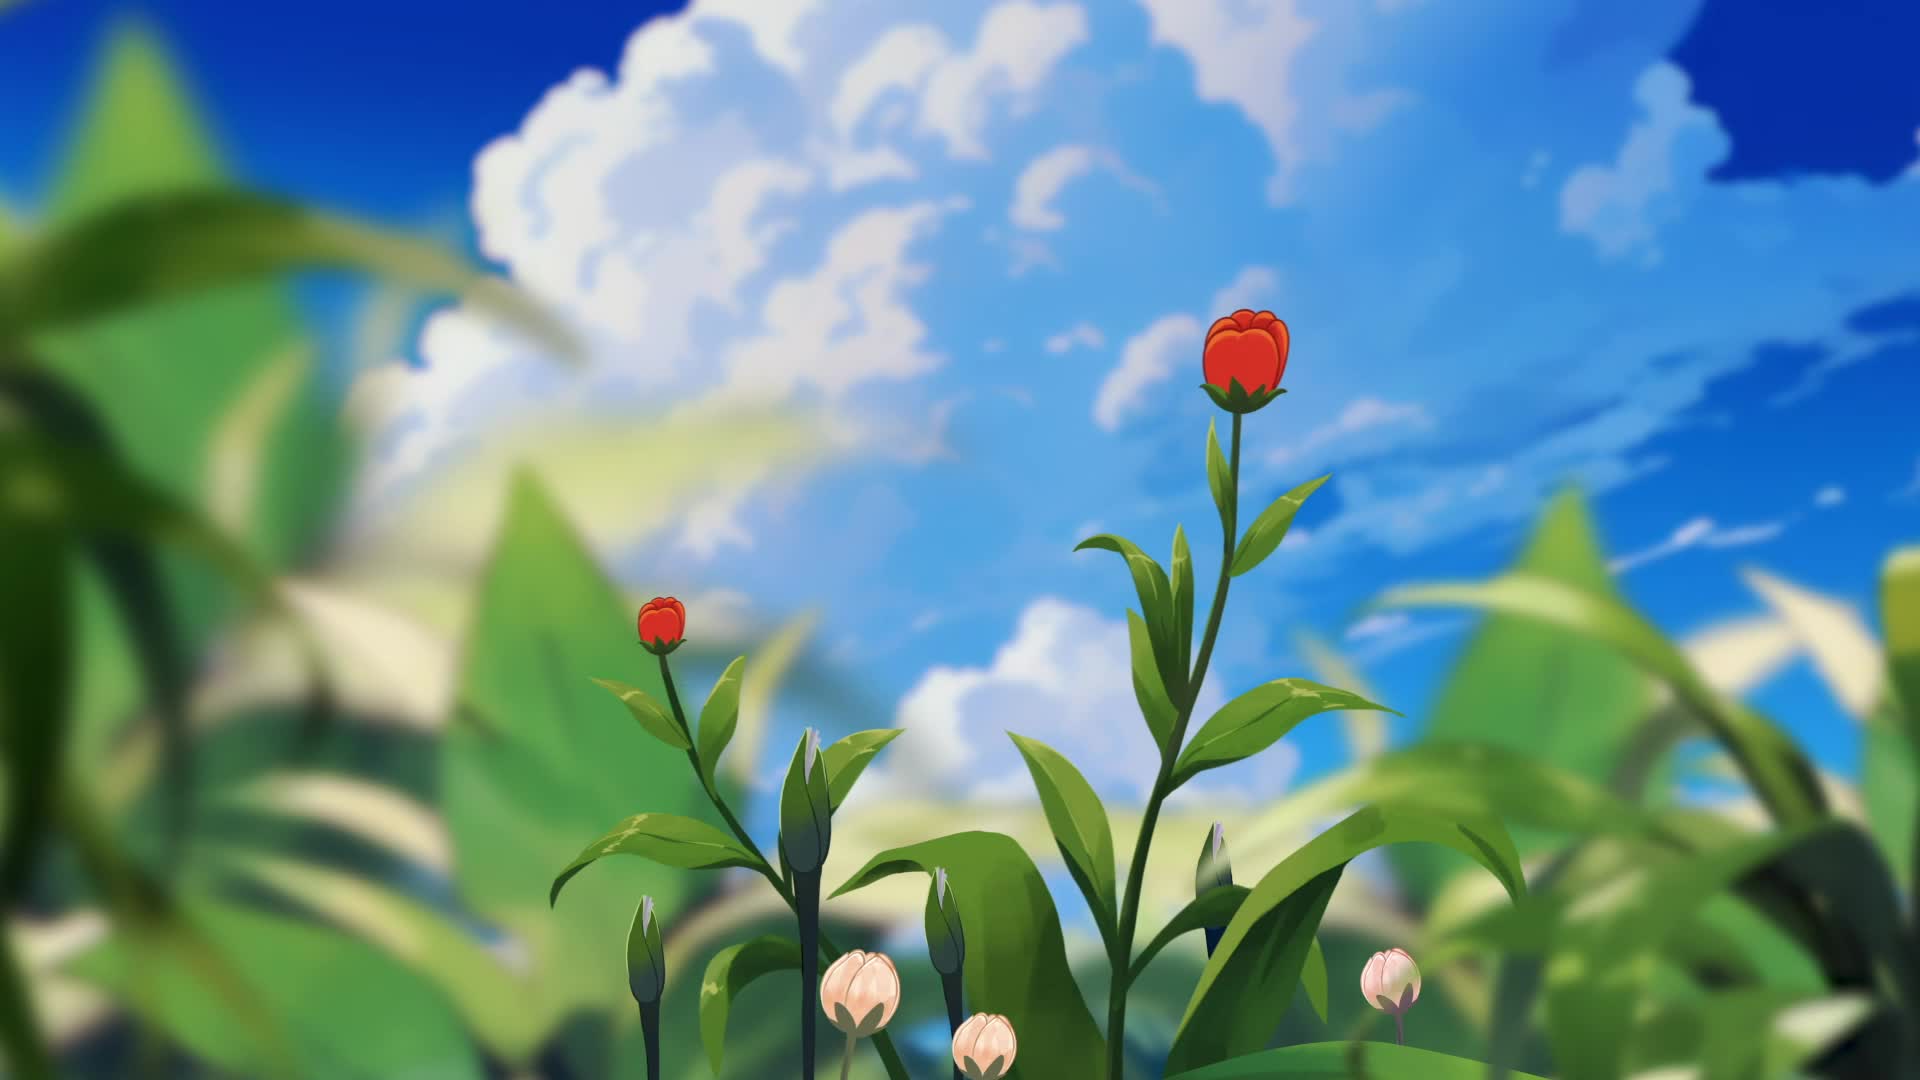 视频 | 双色球送你一朵小红花，让梦想开花